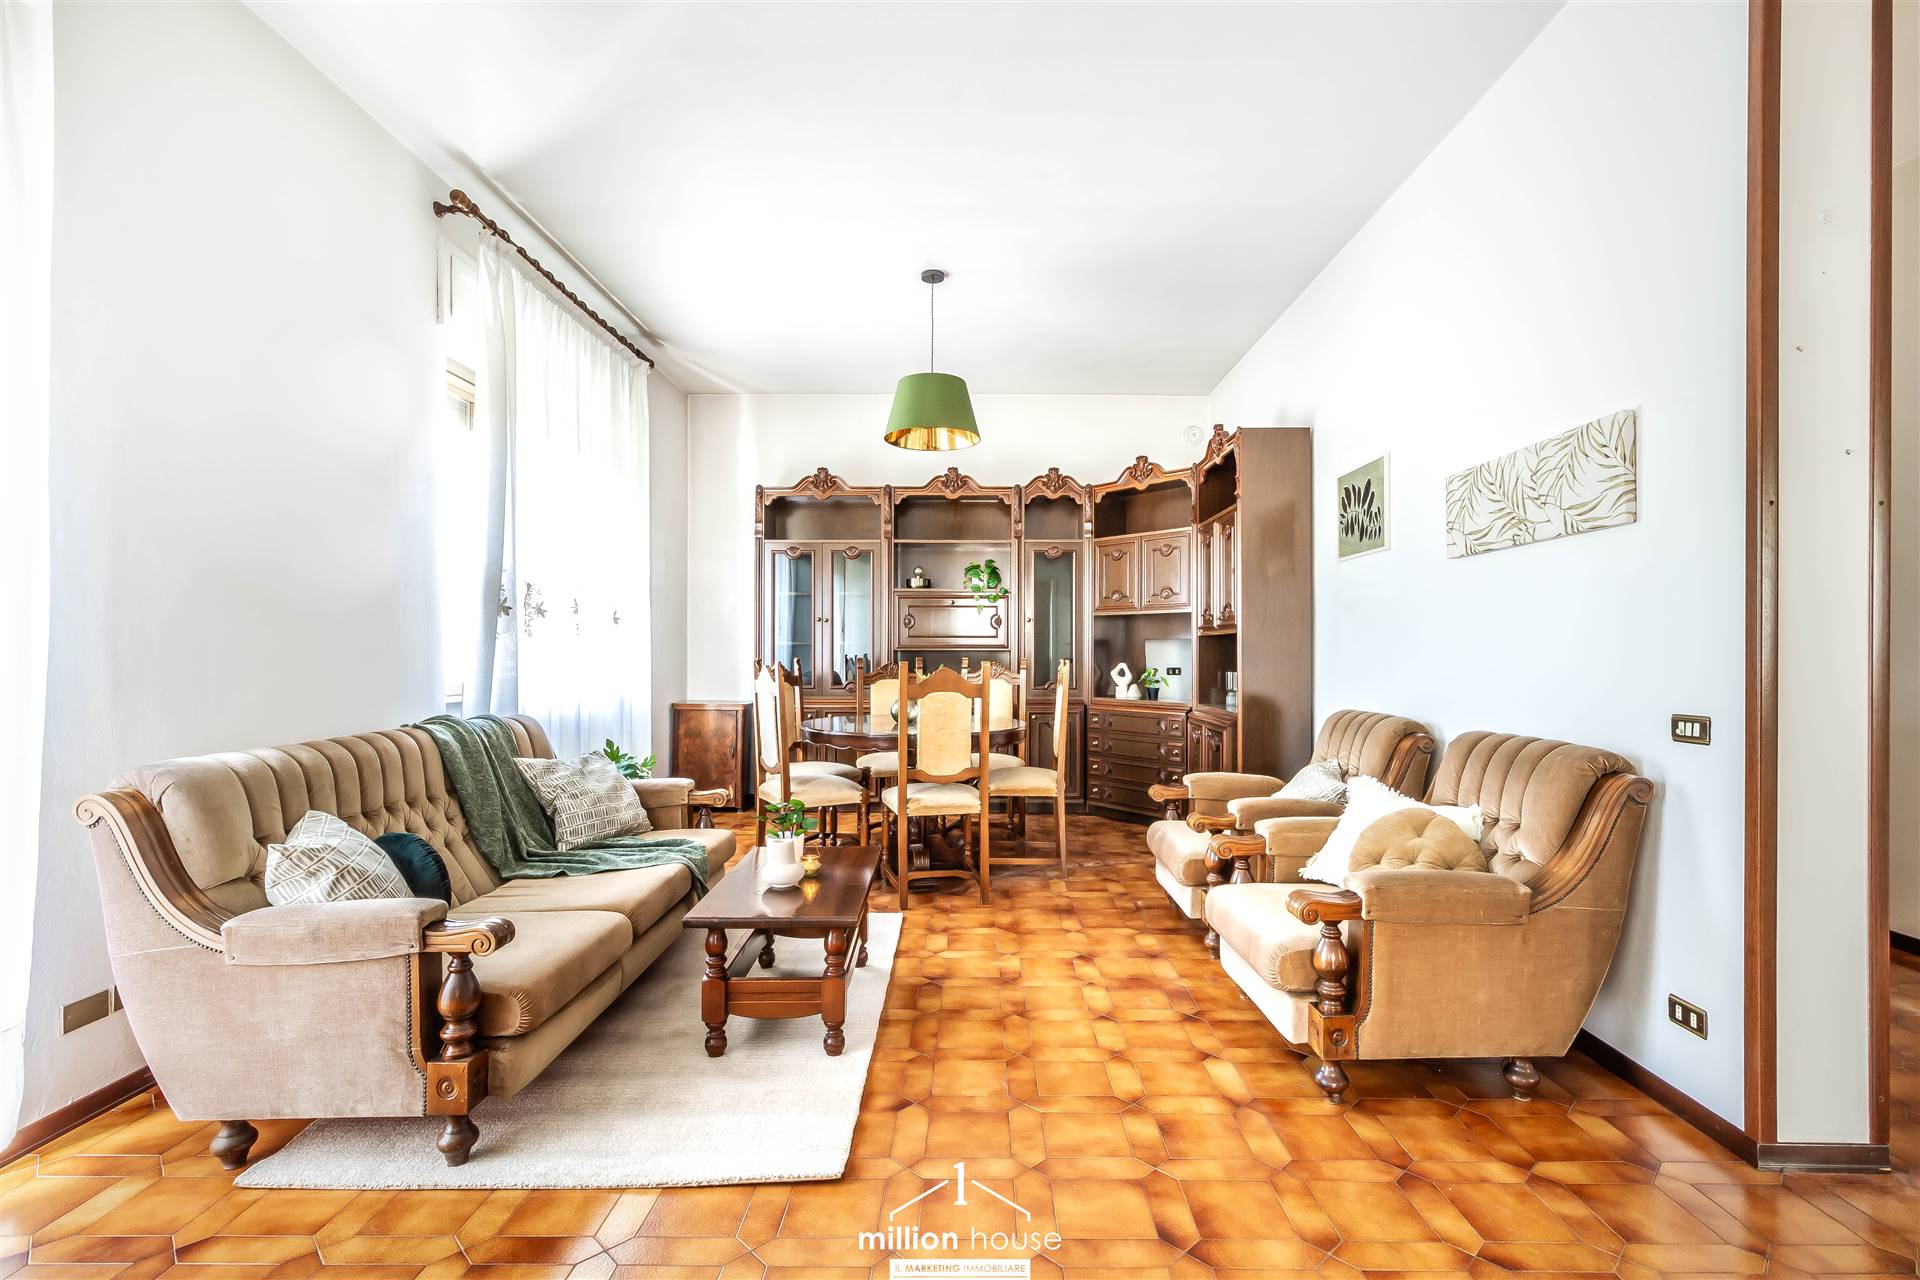 Nella zona collinare di Cesano Maderno, nelle immediate vicinanze del parco delle Groane, vi presentiamo un'appartamento unico che catturerà la 